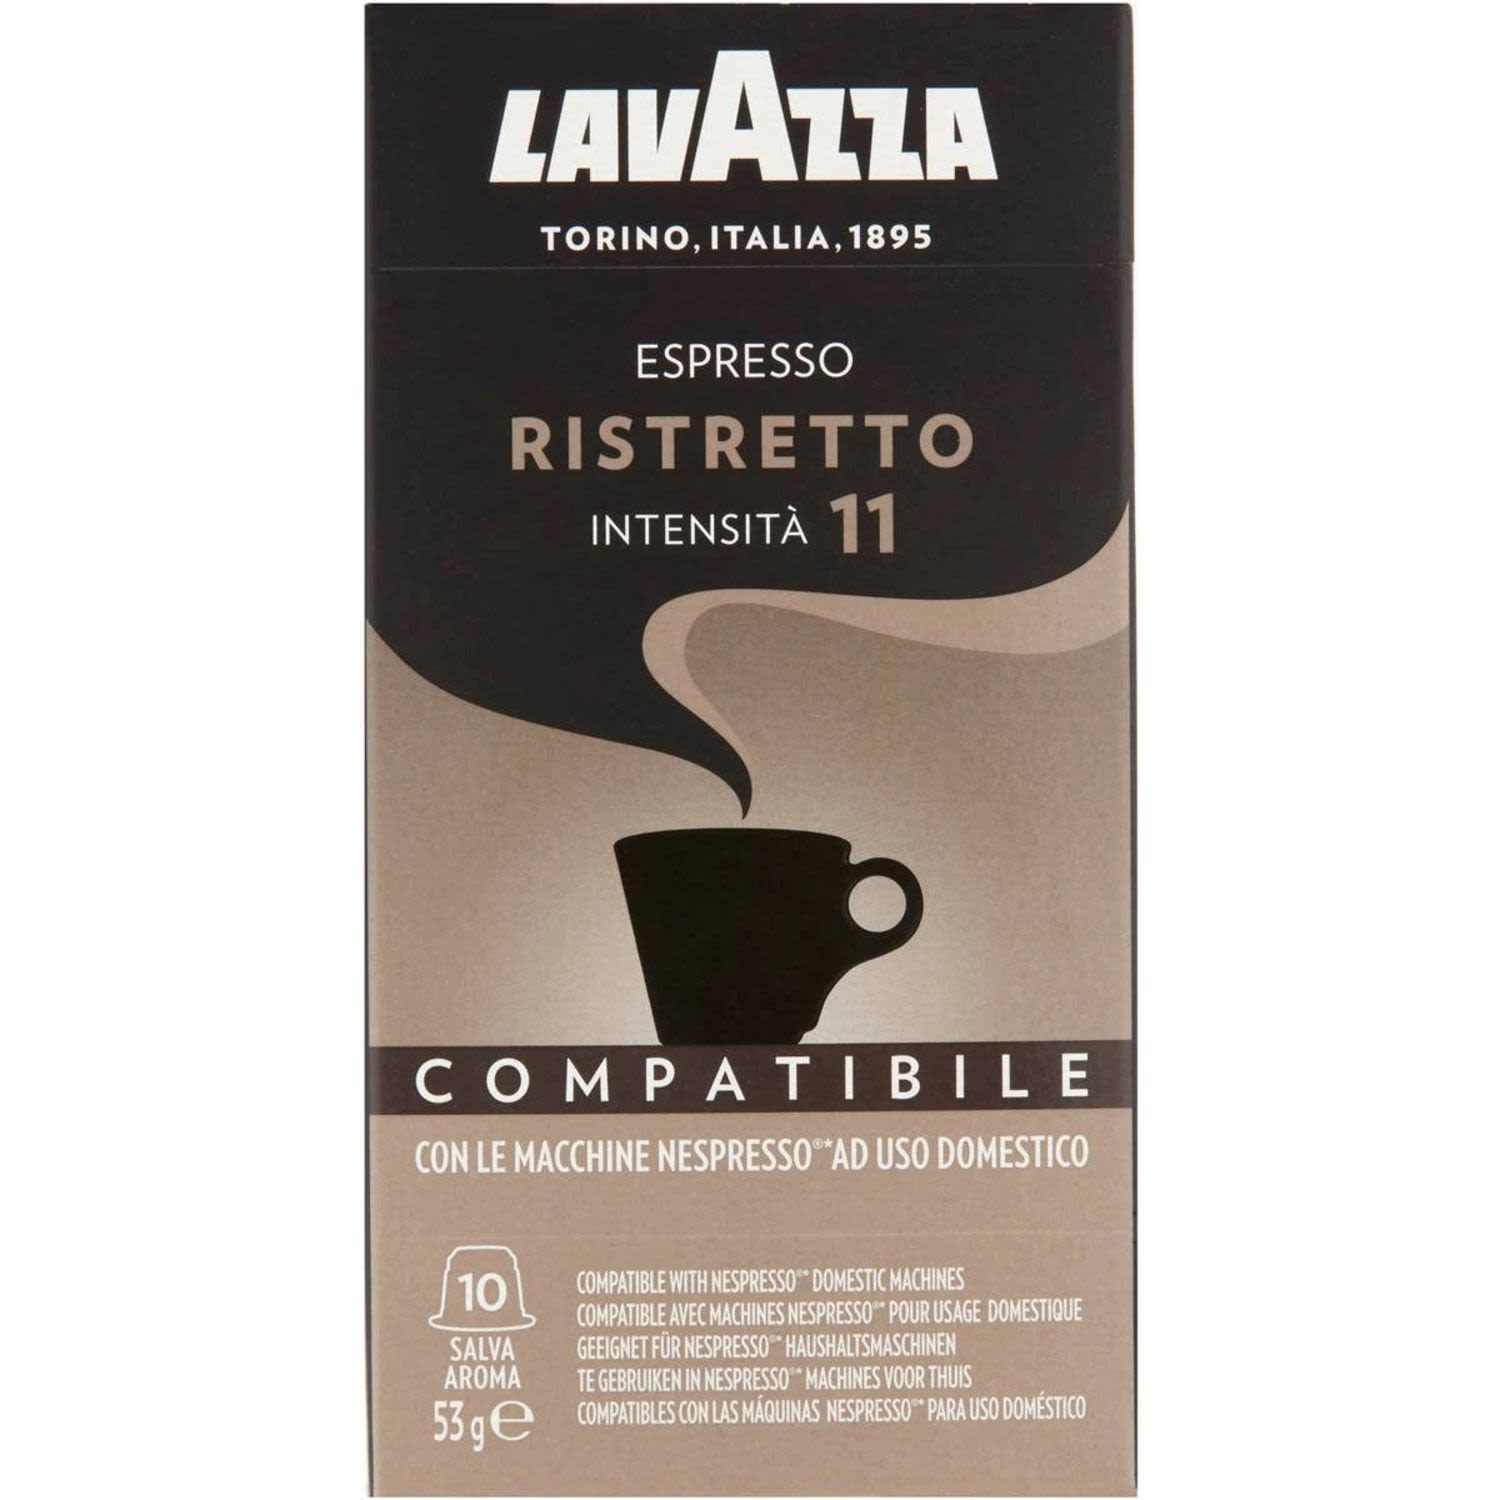 Lavazza Ristretto Coffee Capsules Intensita 11, 10 Each